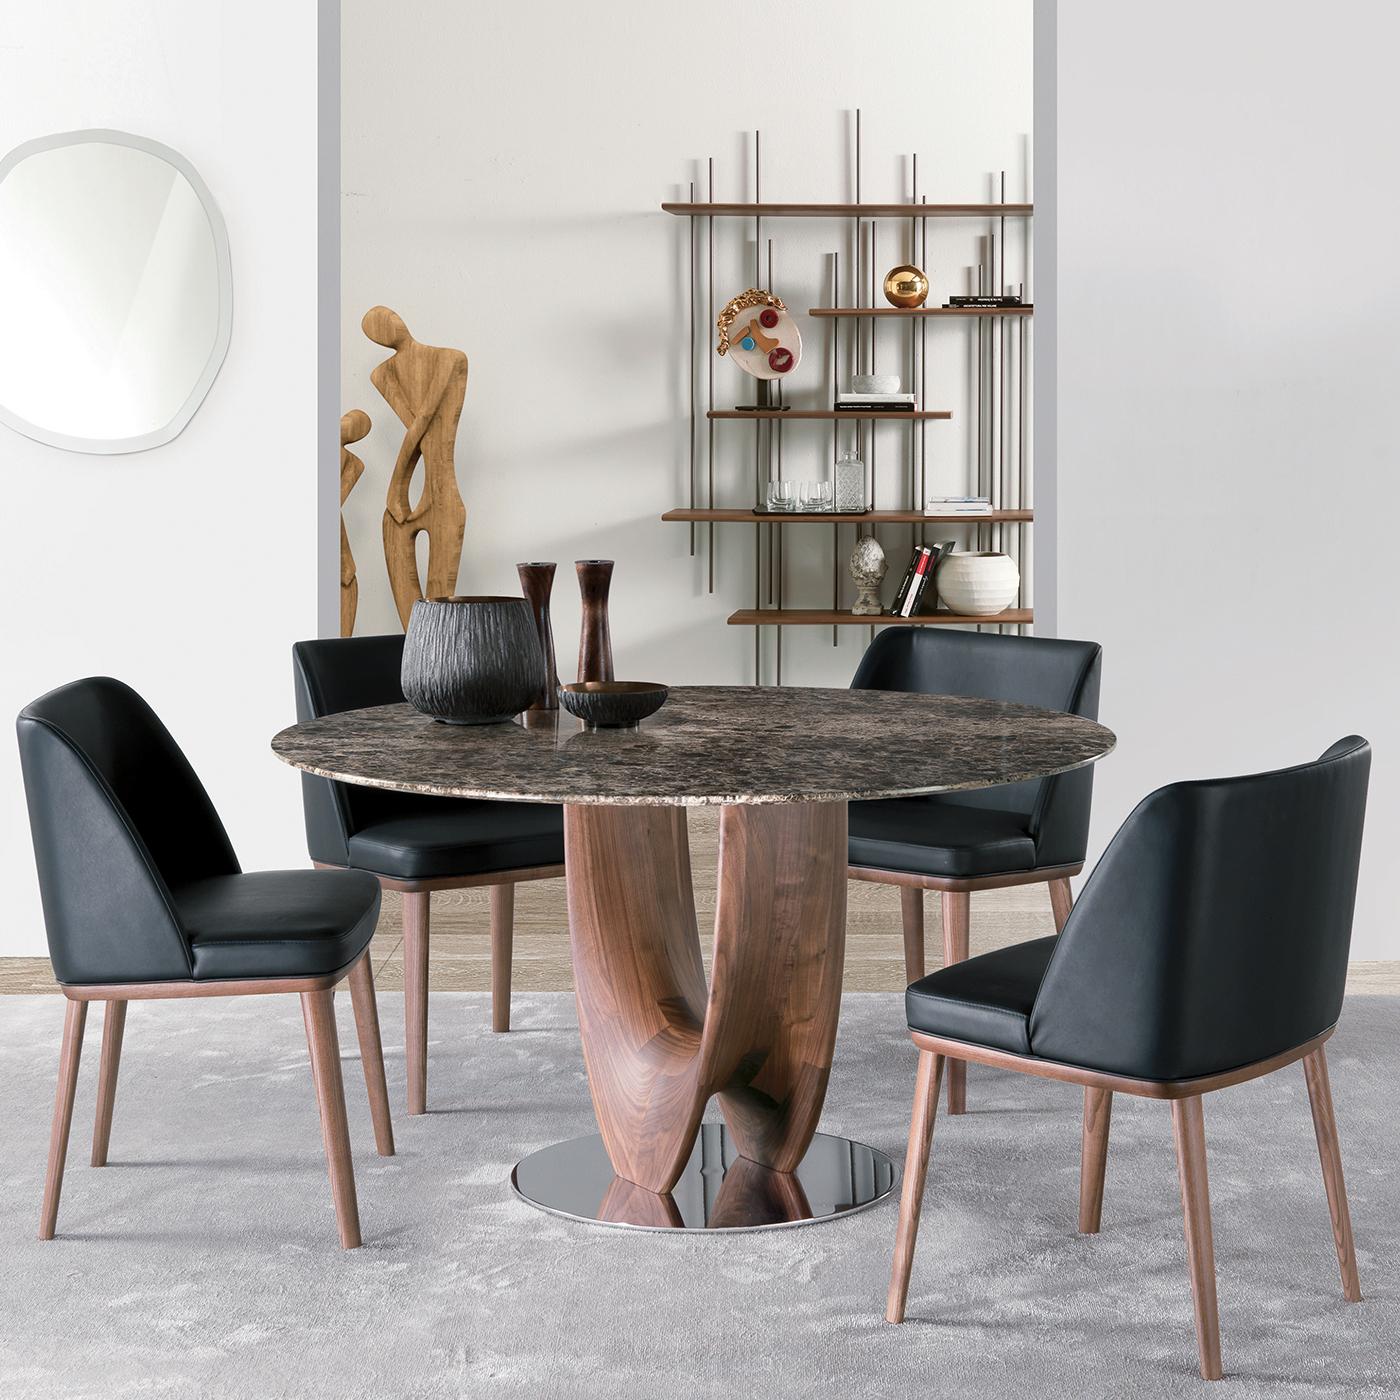 Faisant partie de la collection Axis conçue par Stefano Bigi, cette table de dîner combine une base ronde en métal avec une plaque chromée et un plateau rond en marbre emperador foncé qui mêle sans effort allure classique et moderne. Cette table se